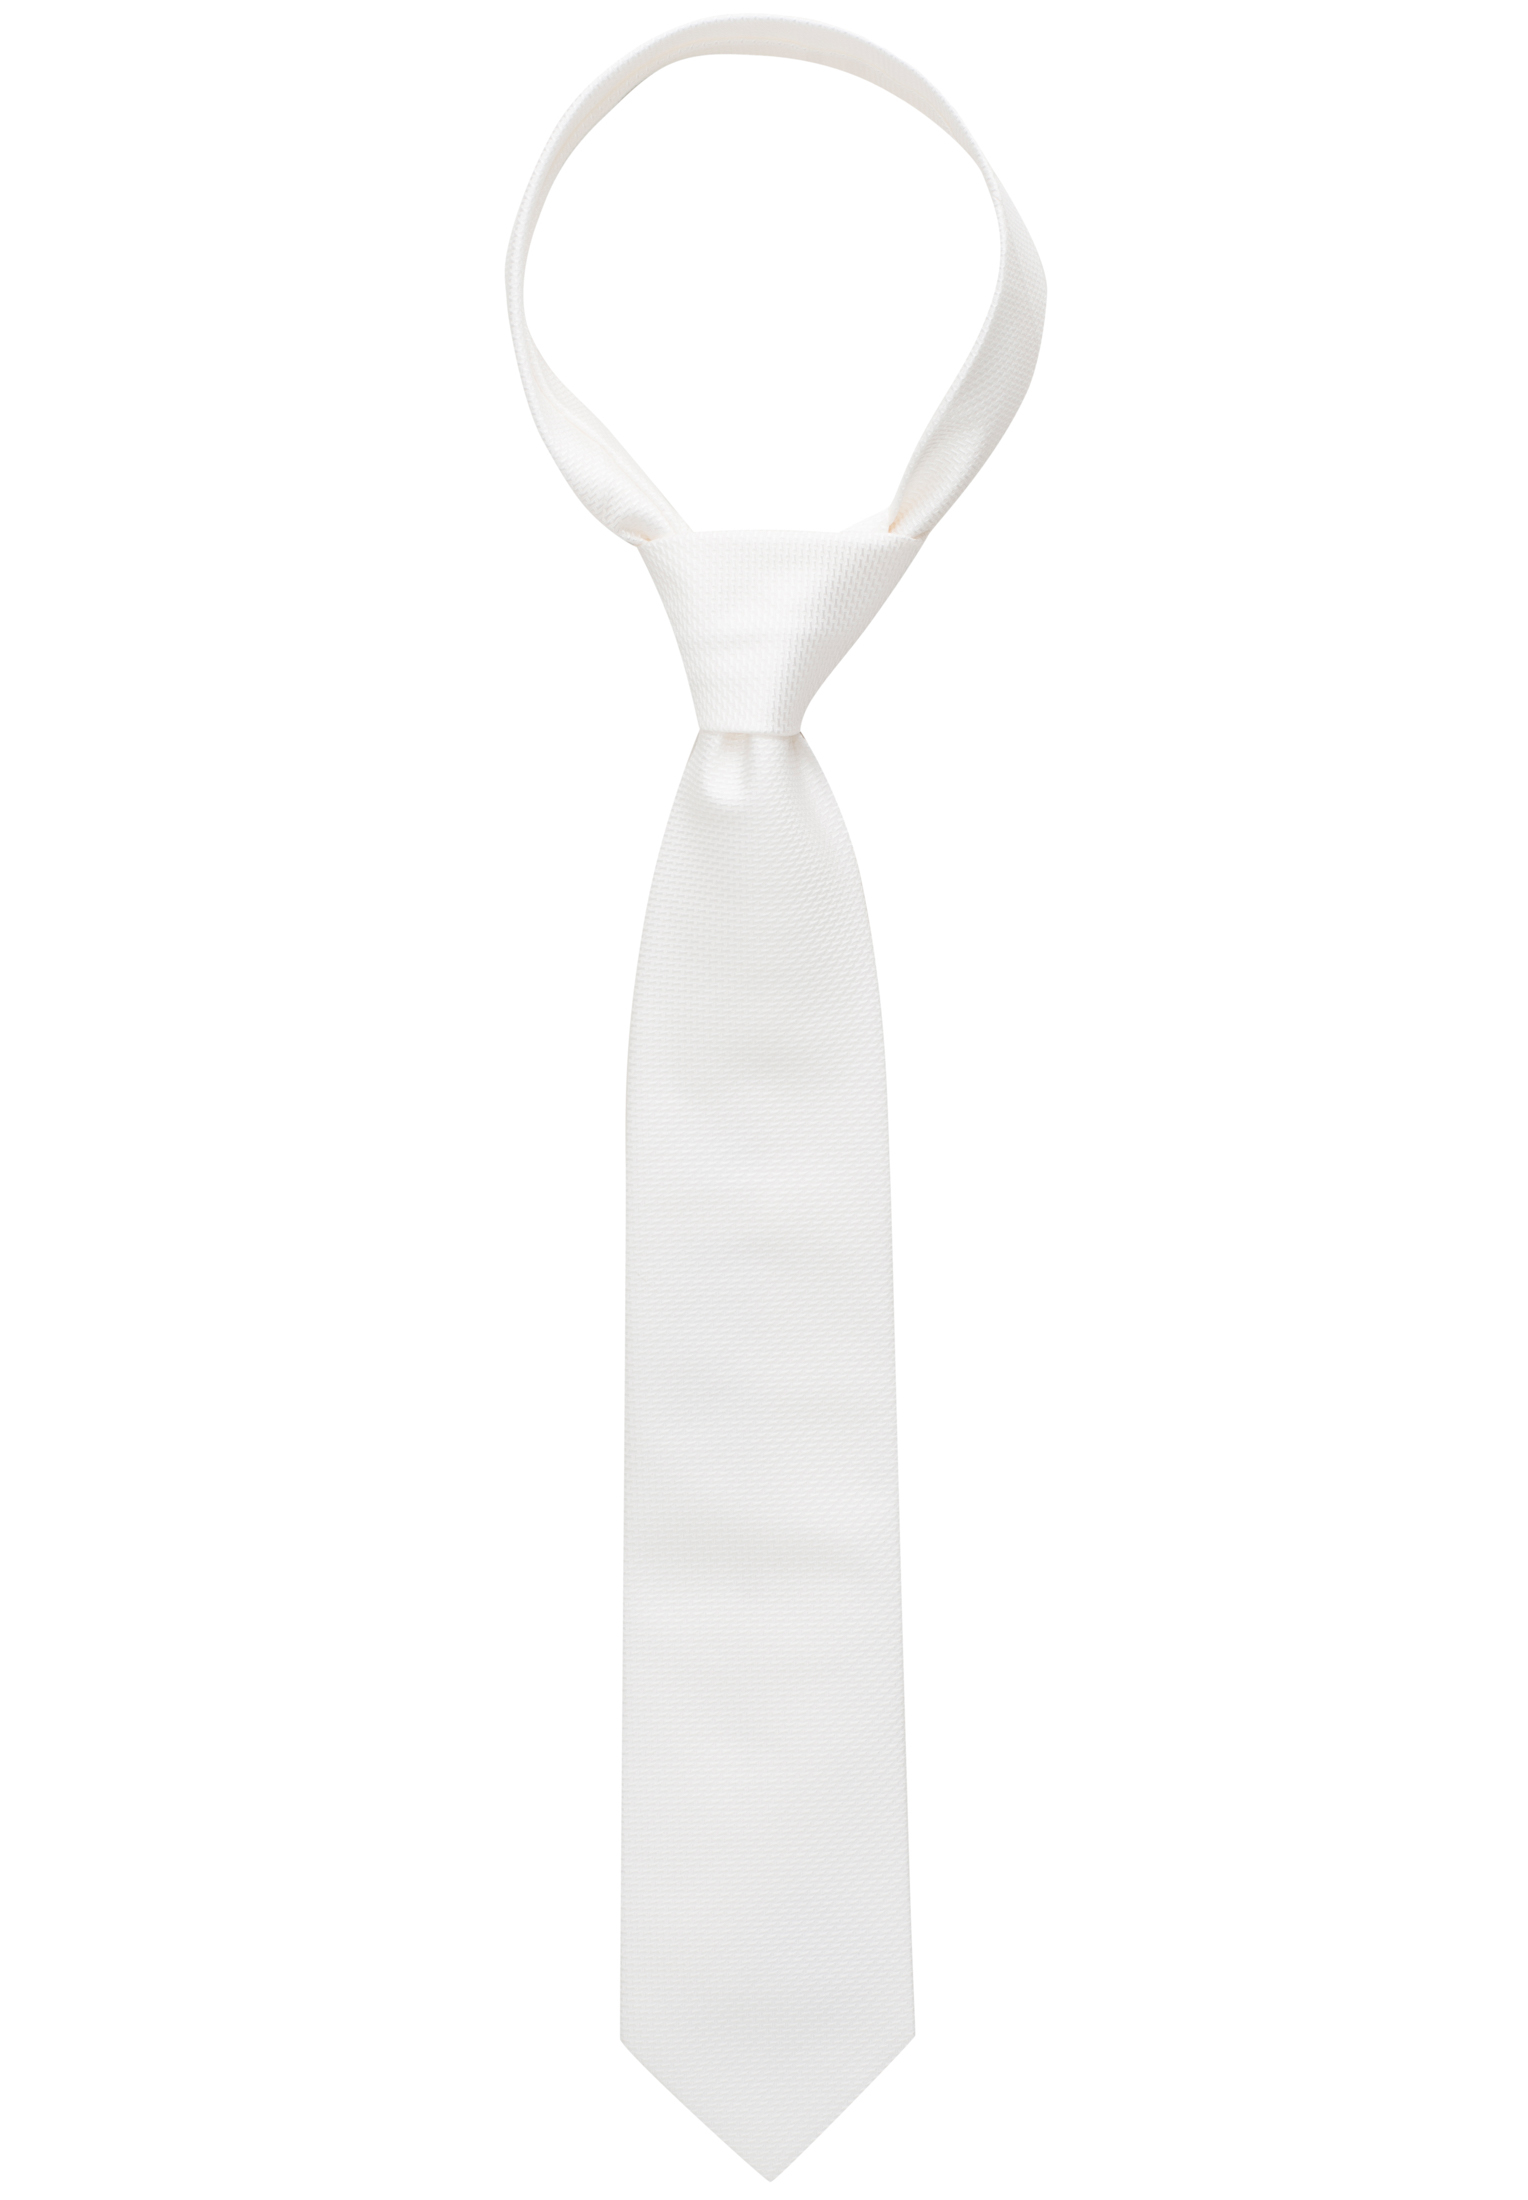 Krawatte in weiß strukturiert | weiß | 160 1AC01866-00-01-160 